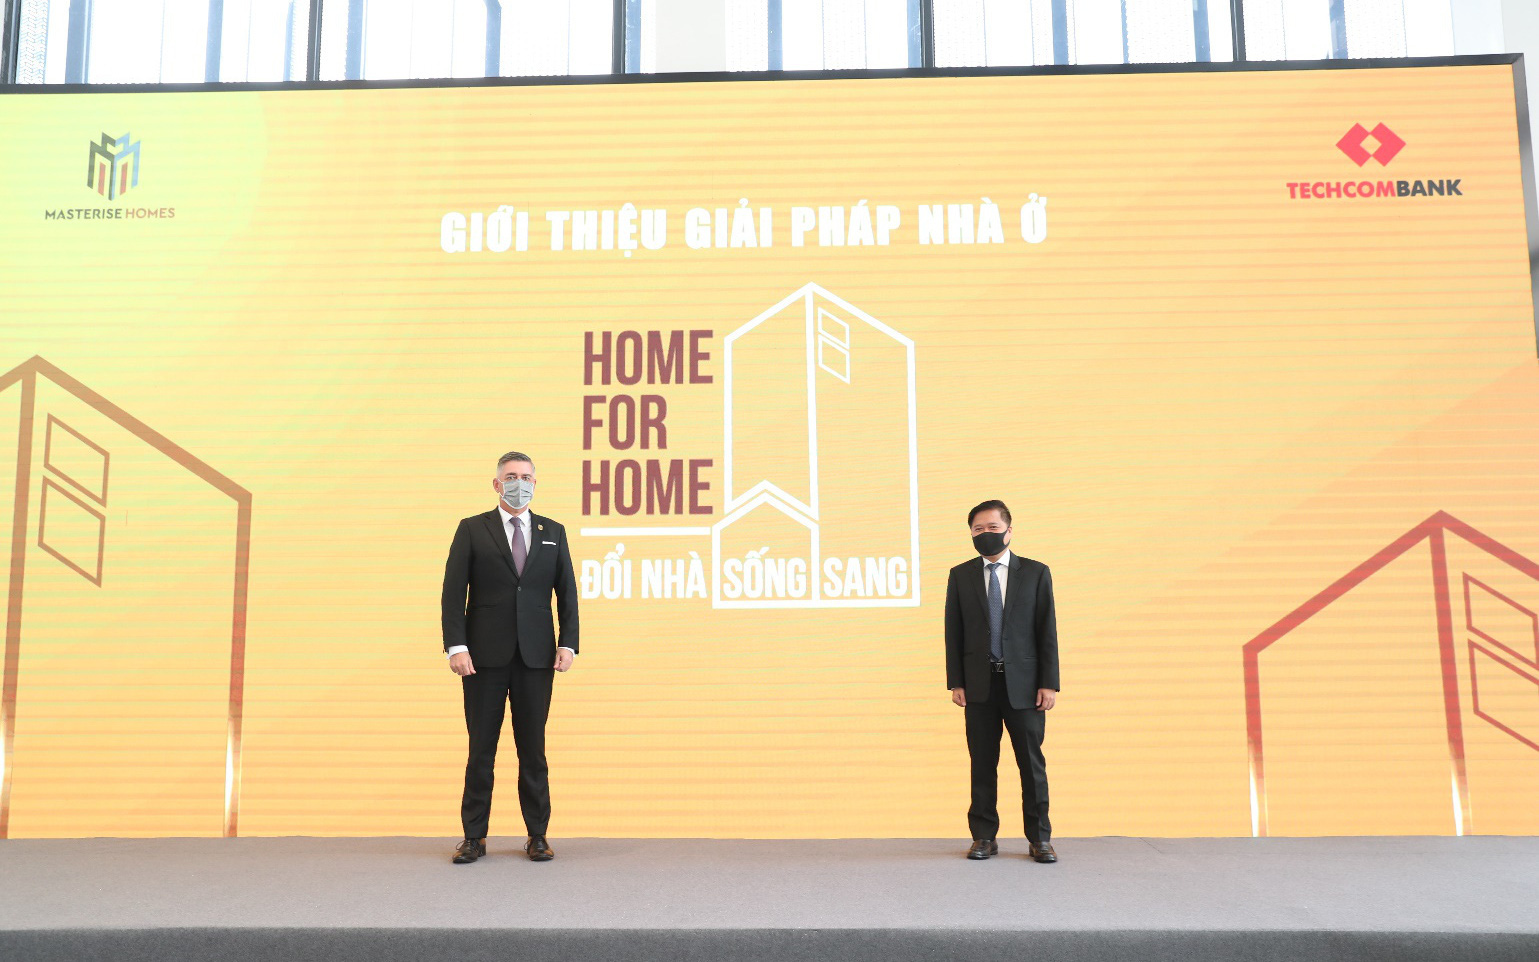 Masterise Homes và Techcombank chính thức khởi động giải pháp nhà ở “Home for Home”